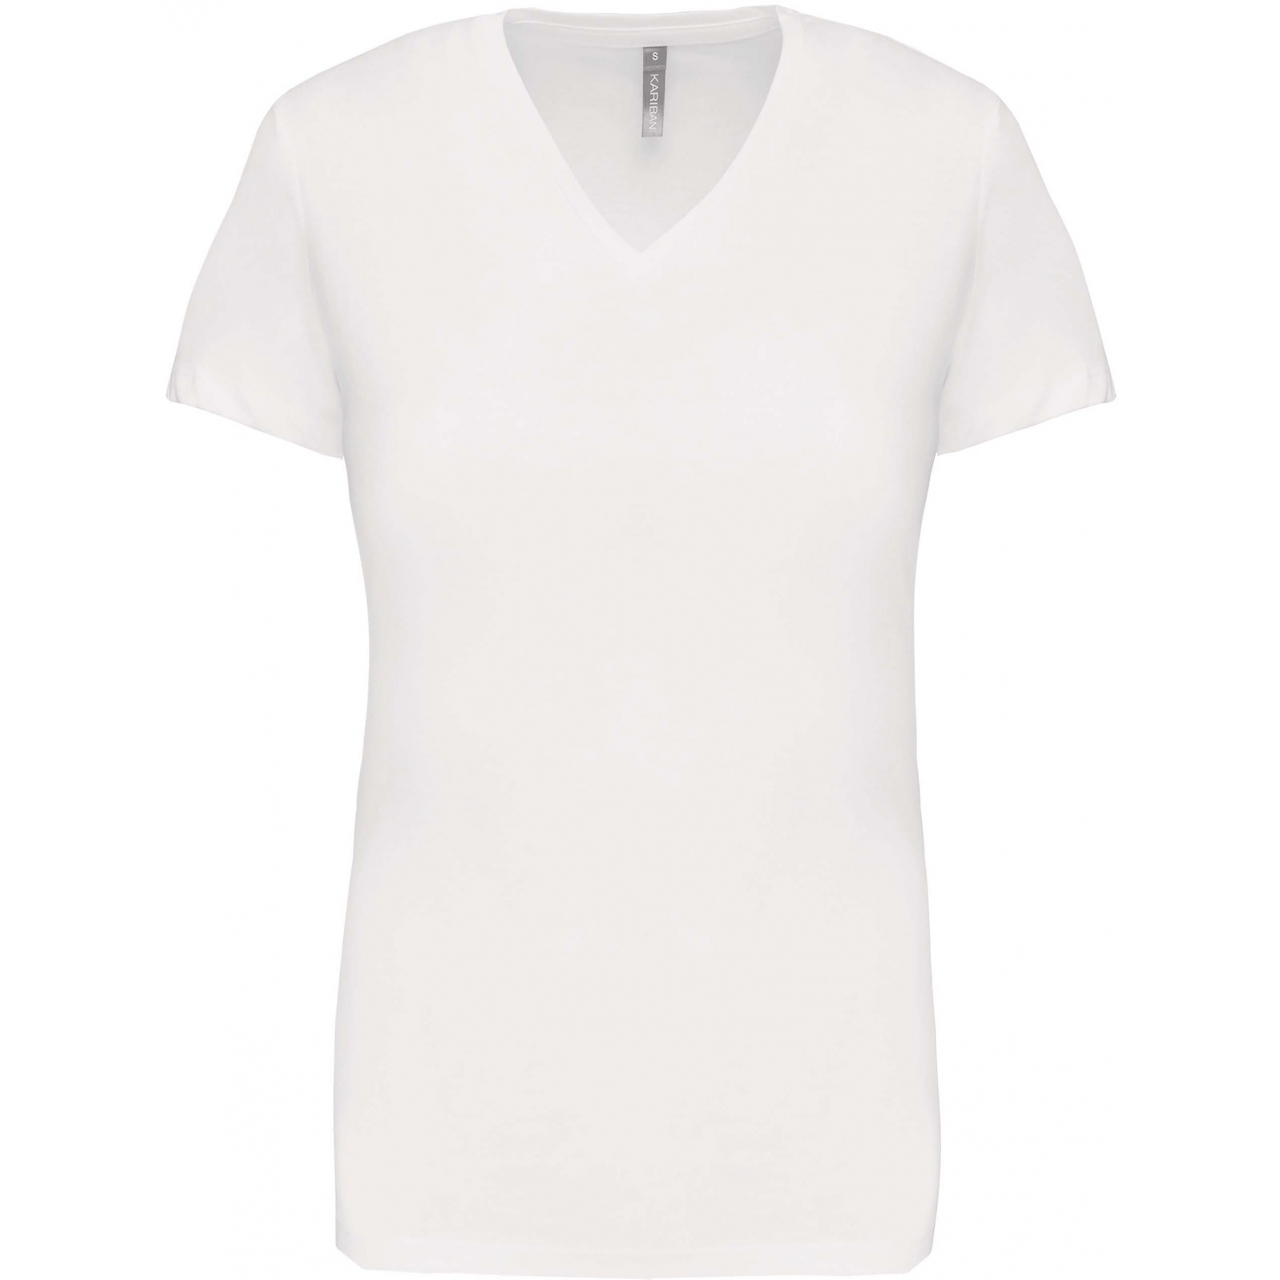 Dámské tričko Kariban V-neck s krátkým rukávem - bílé, XXL